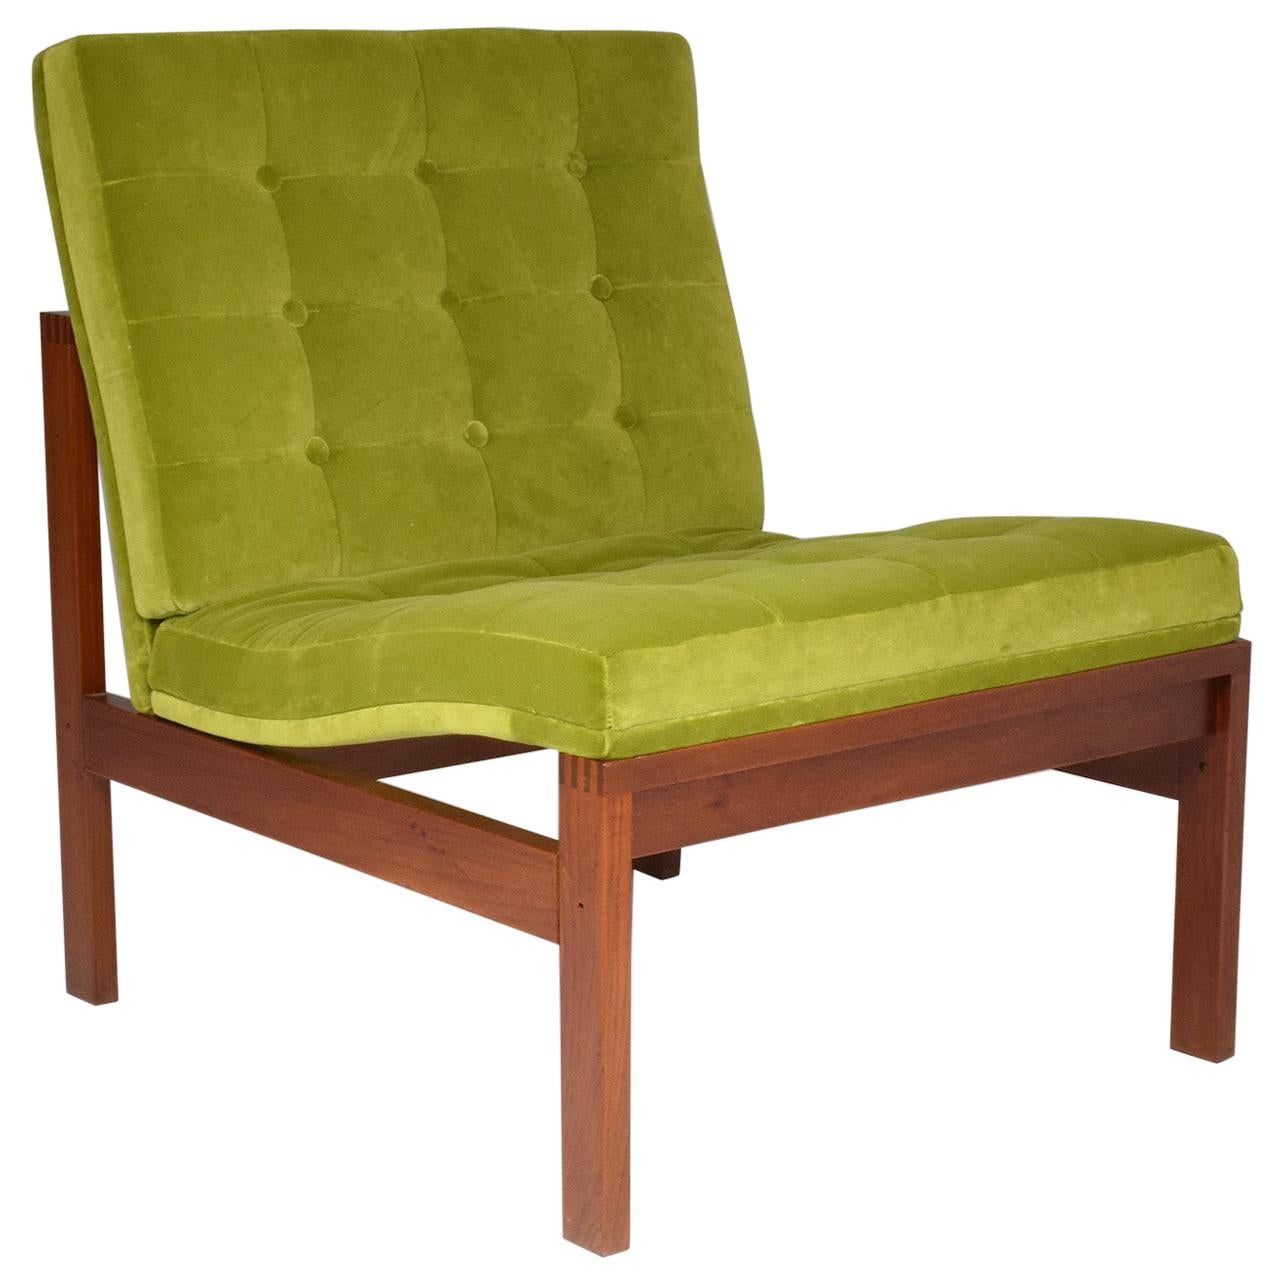 1960's Danish Lounge Chair by Ole Gjerlov Knudssen for France & Søn